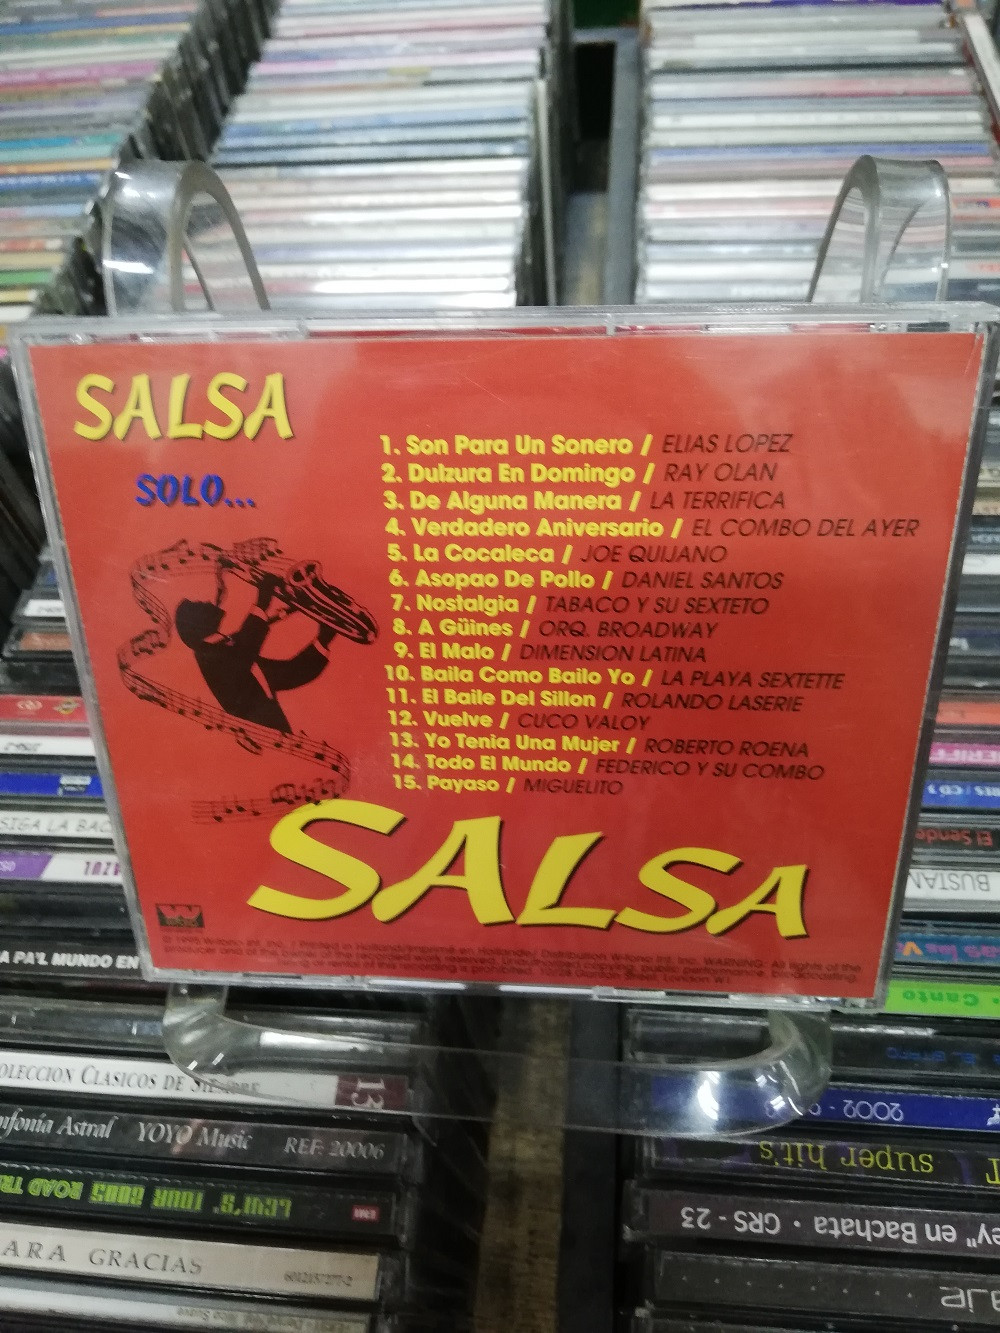 Imagen CD SALSA SOLO...SALSA 2